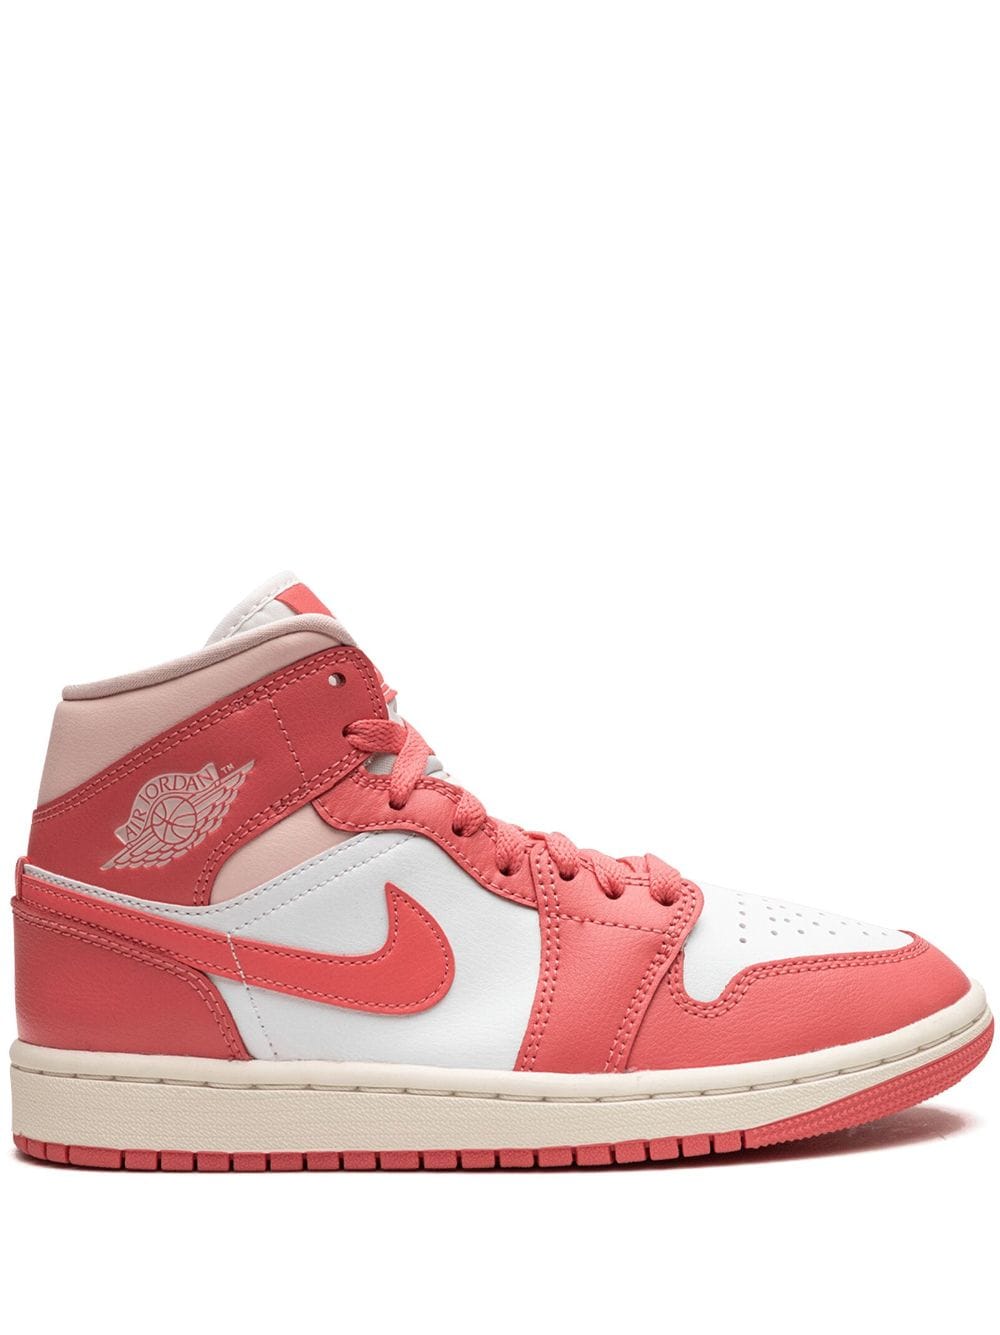 Jordan Air Jordan 1 Mid sneakers - Pink